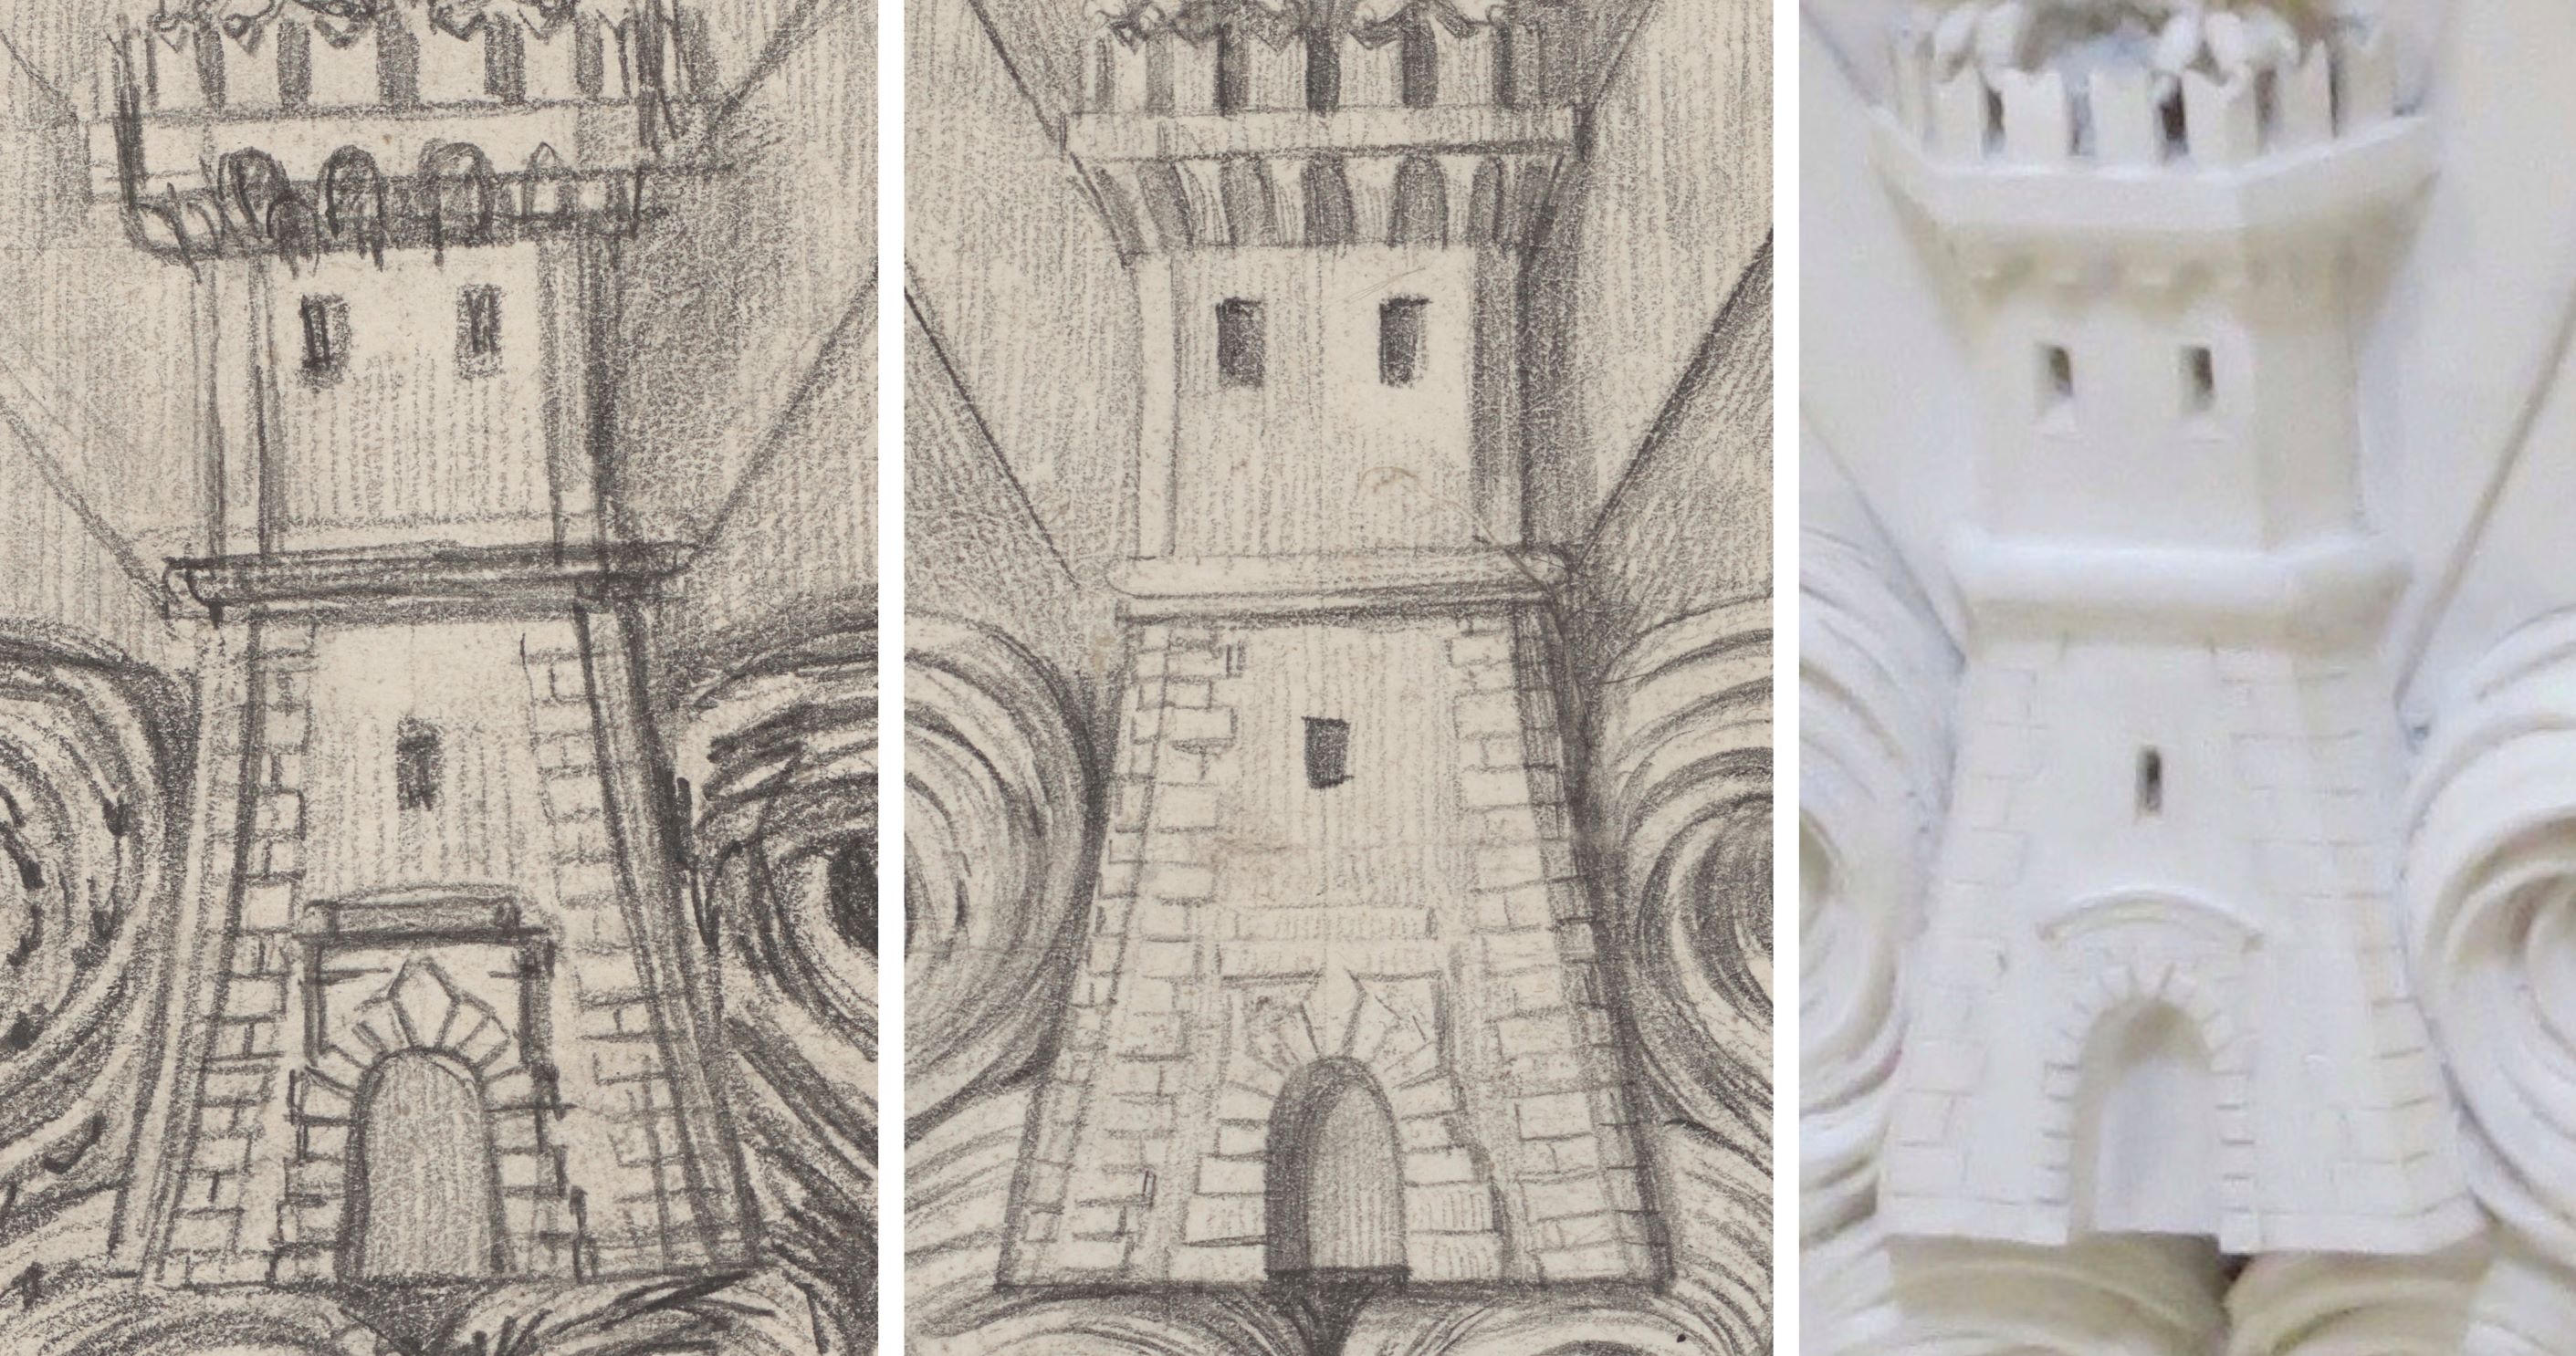 Zeichnungen und Ausführung eines Turms als Architekturverzierung